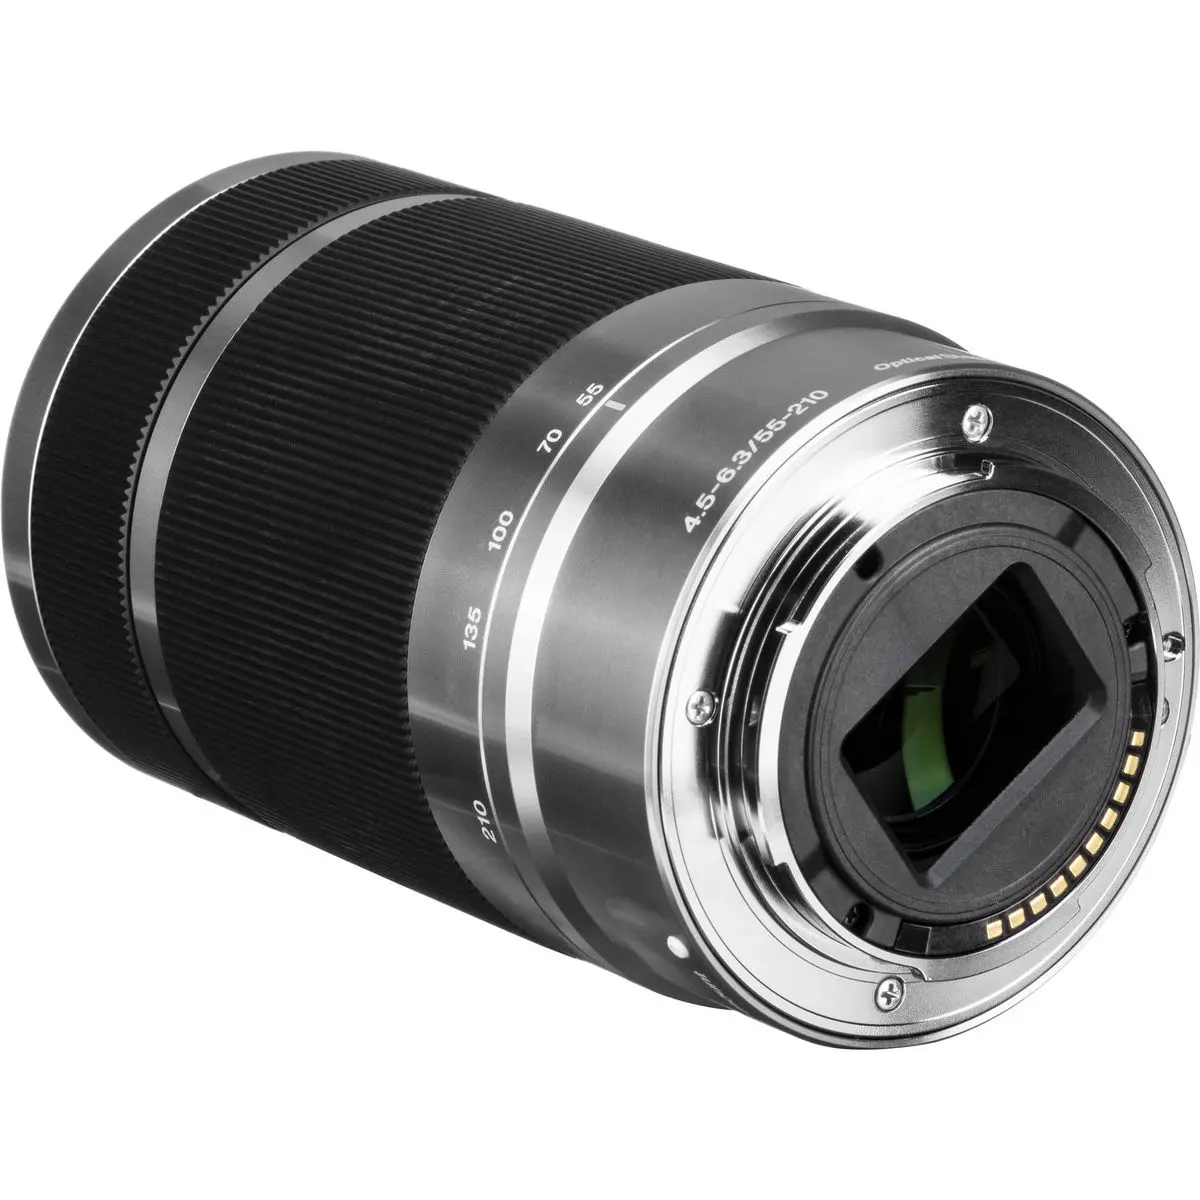 3. Sony E 55-210mm F4.5-6.3 OSS (Silver) Lens